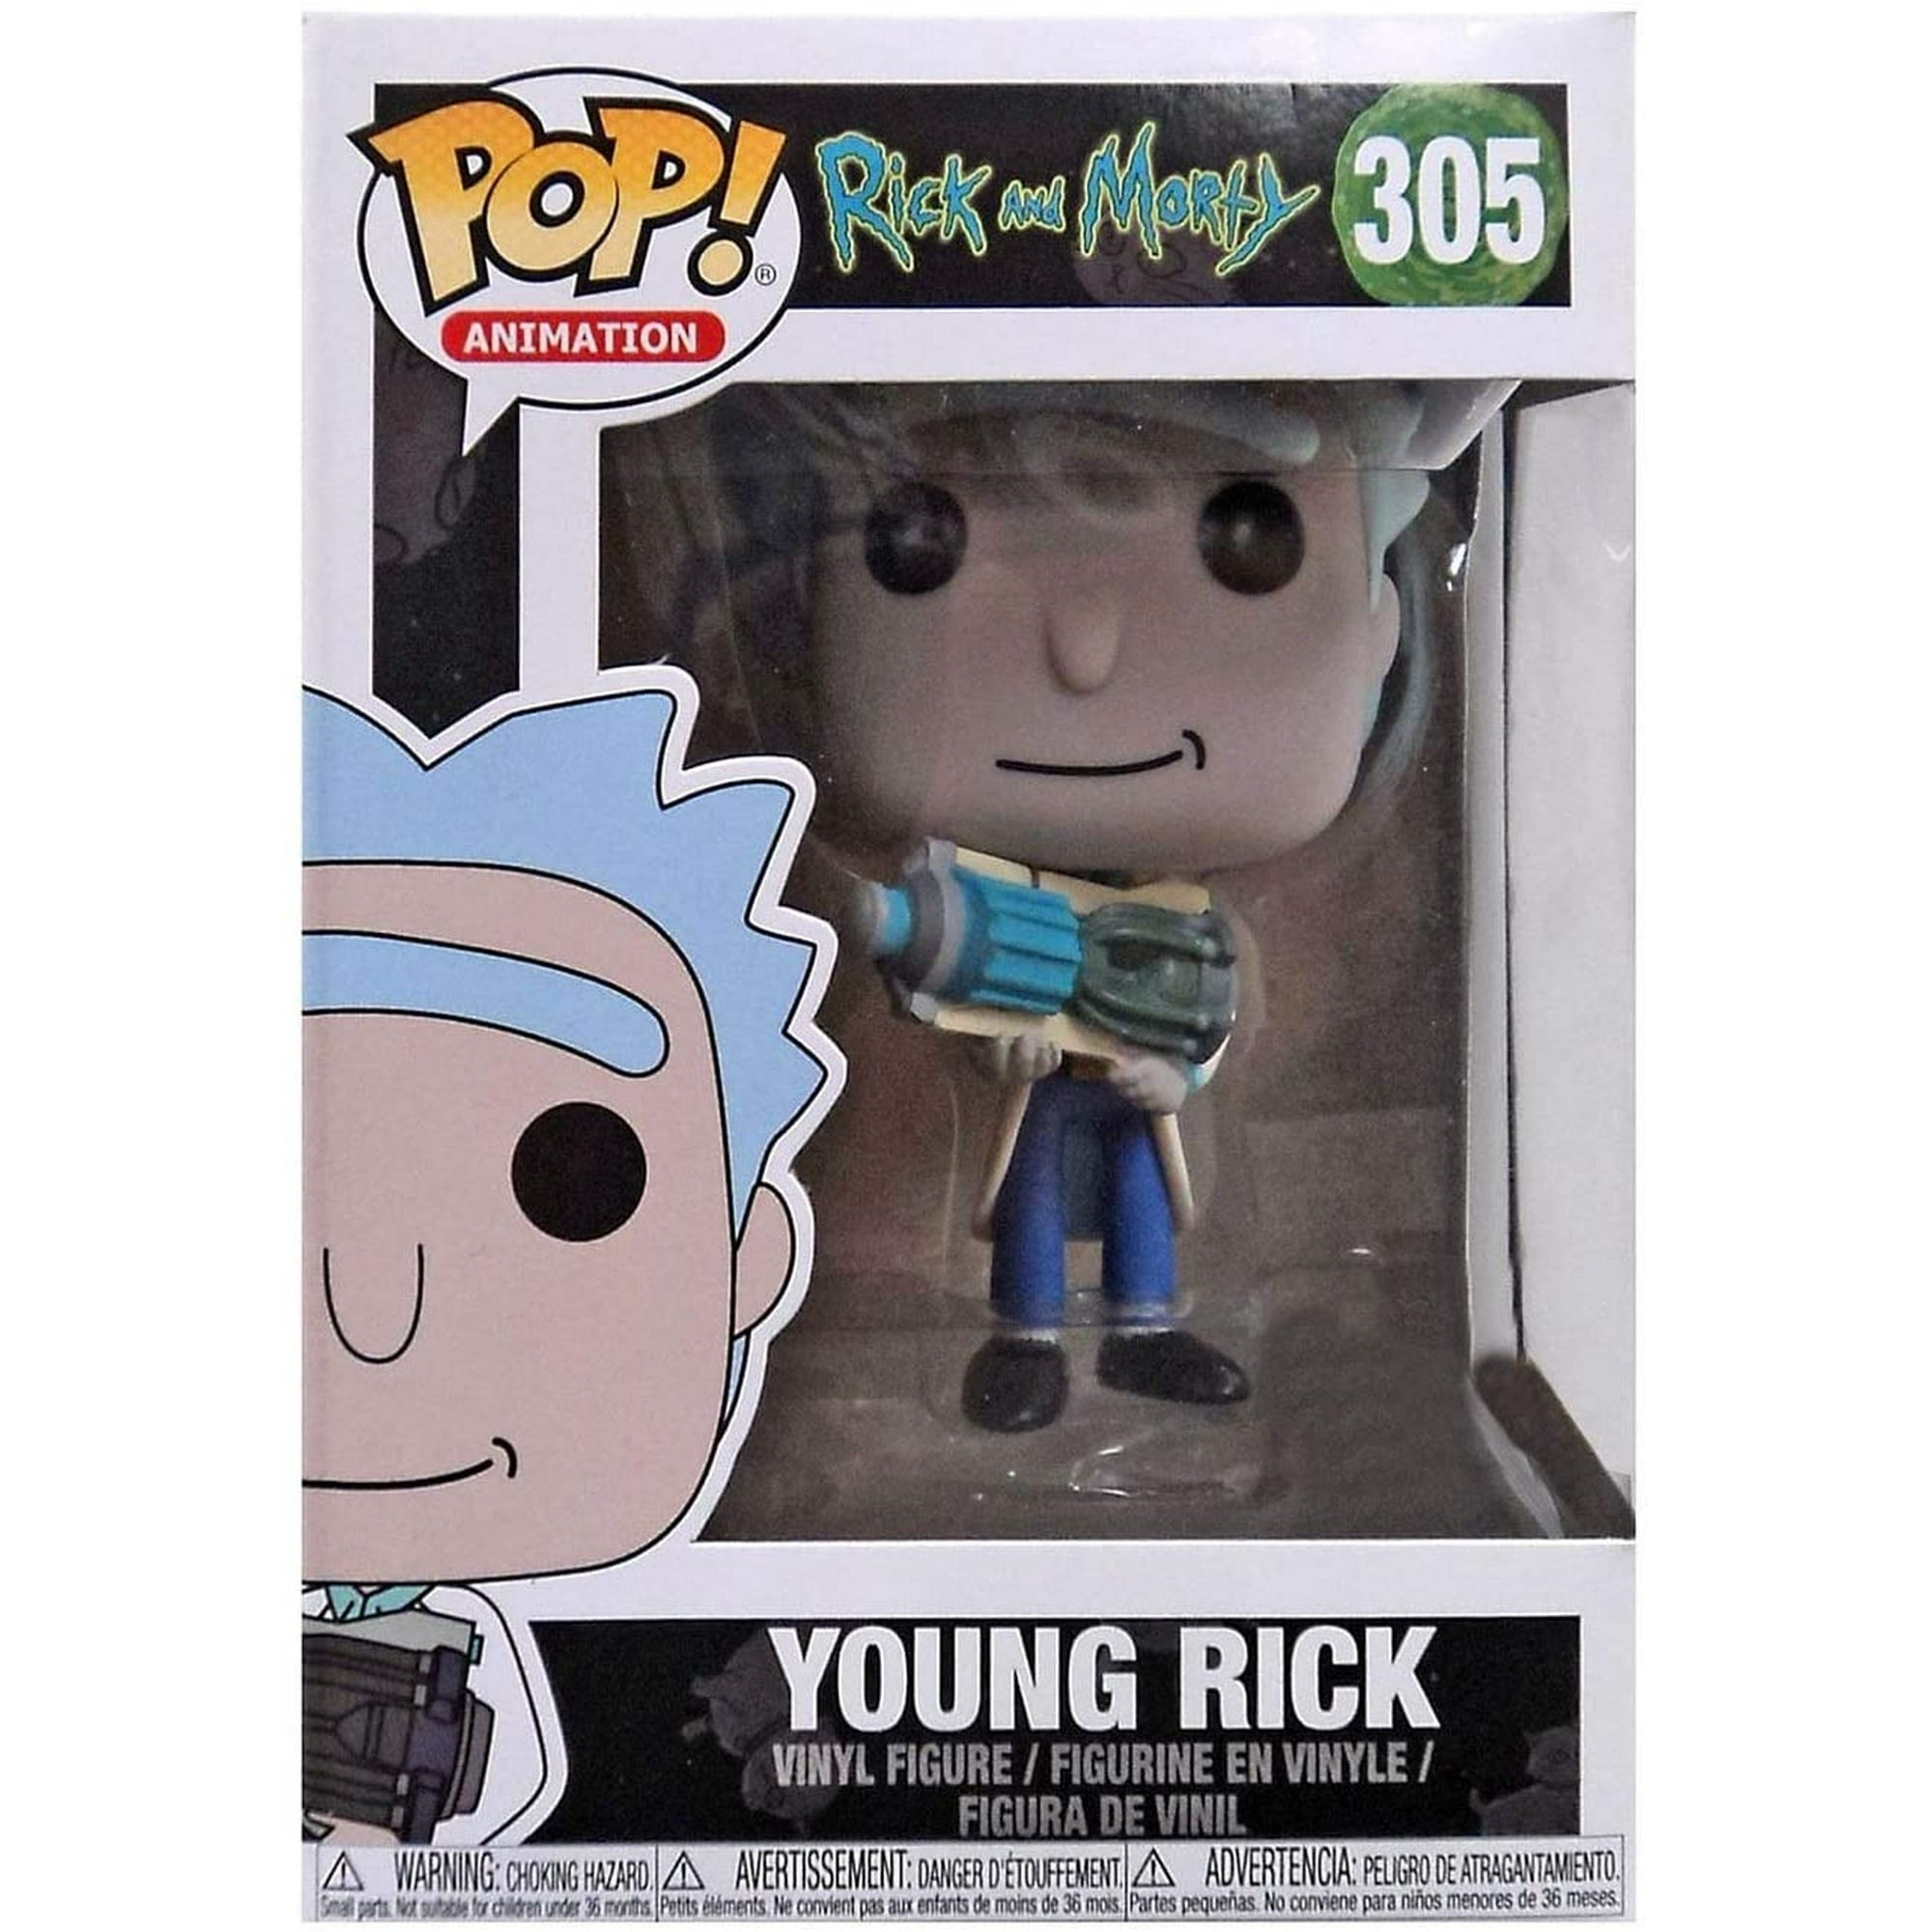 Funko Pop! Alien Morty: Rick and Morty (Exclusivo) #338 - Funko